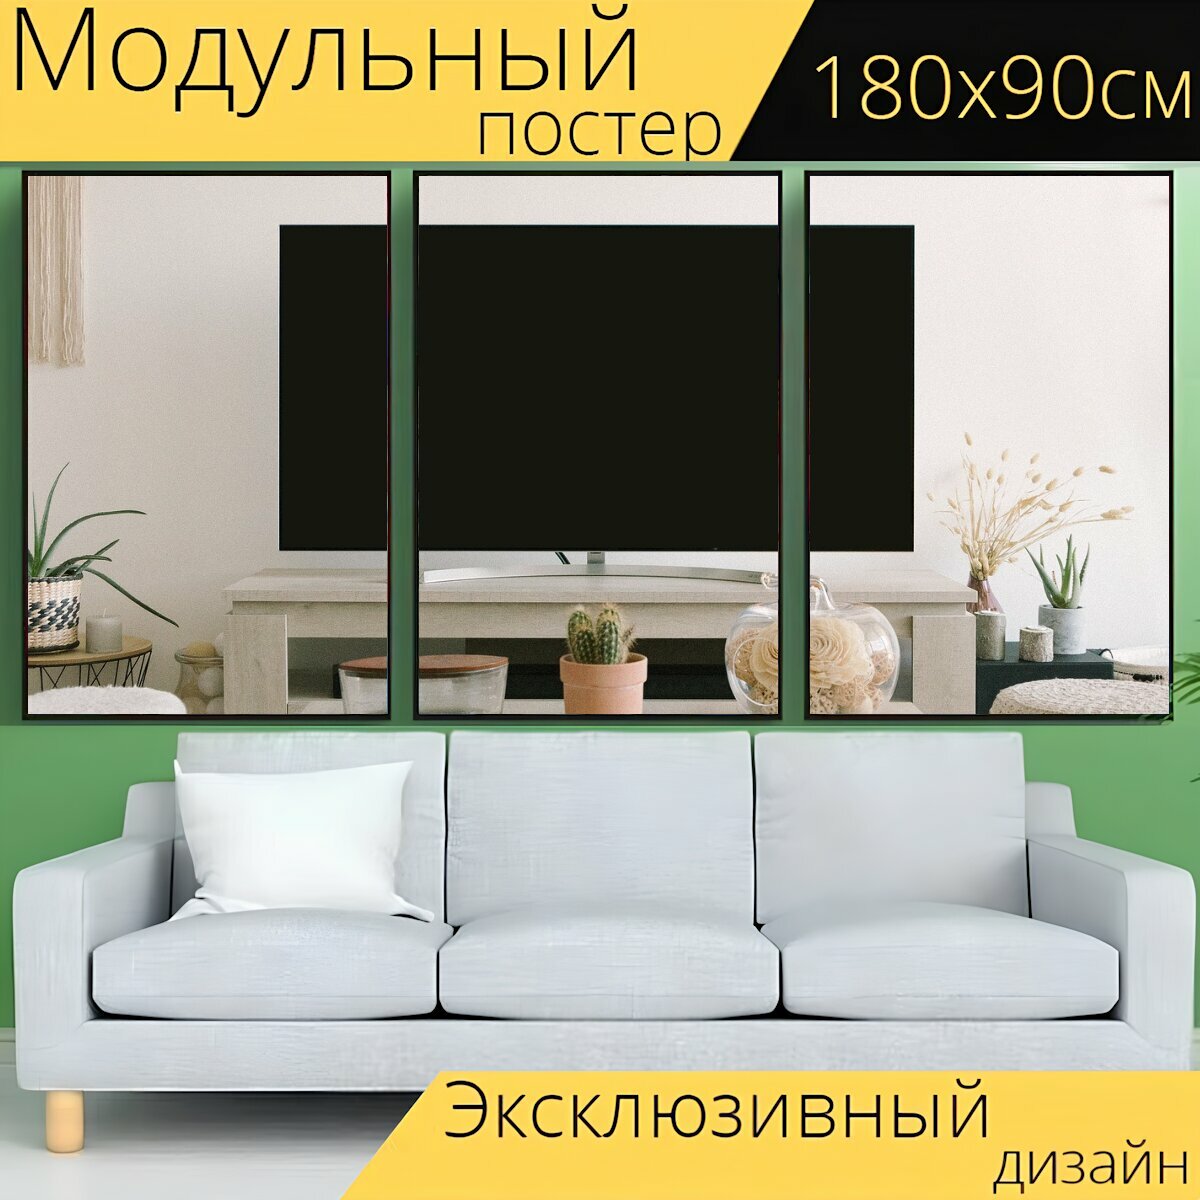 Модульный постер "Телевизор, телевизионный макет, телевидение" 180 x 90 см. для интерьера